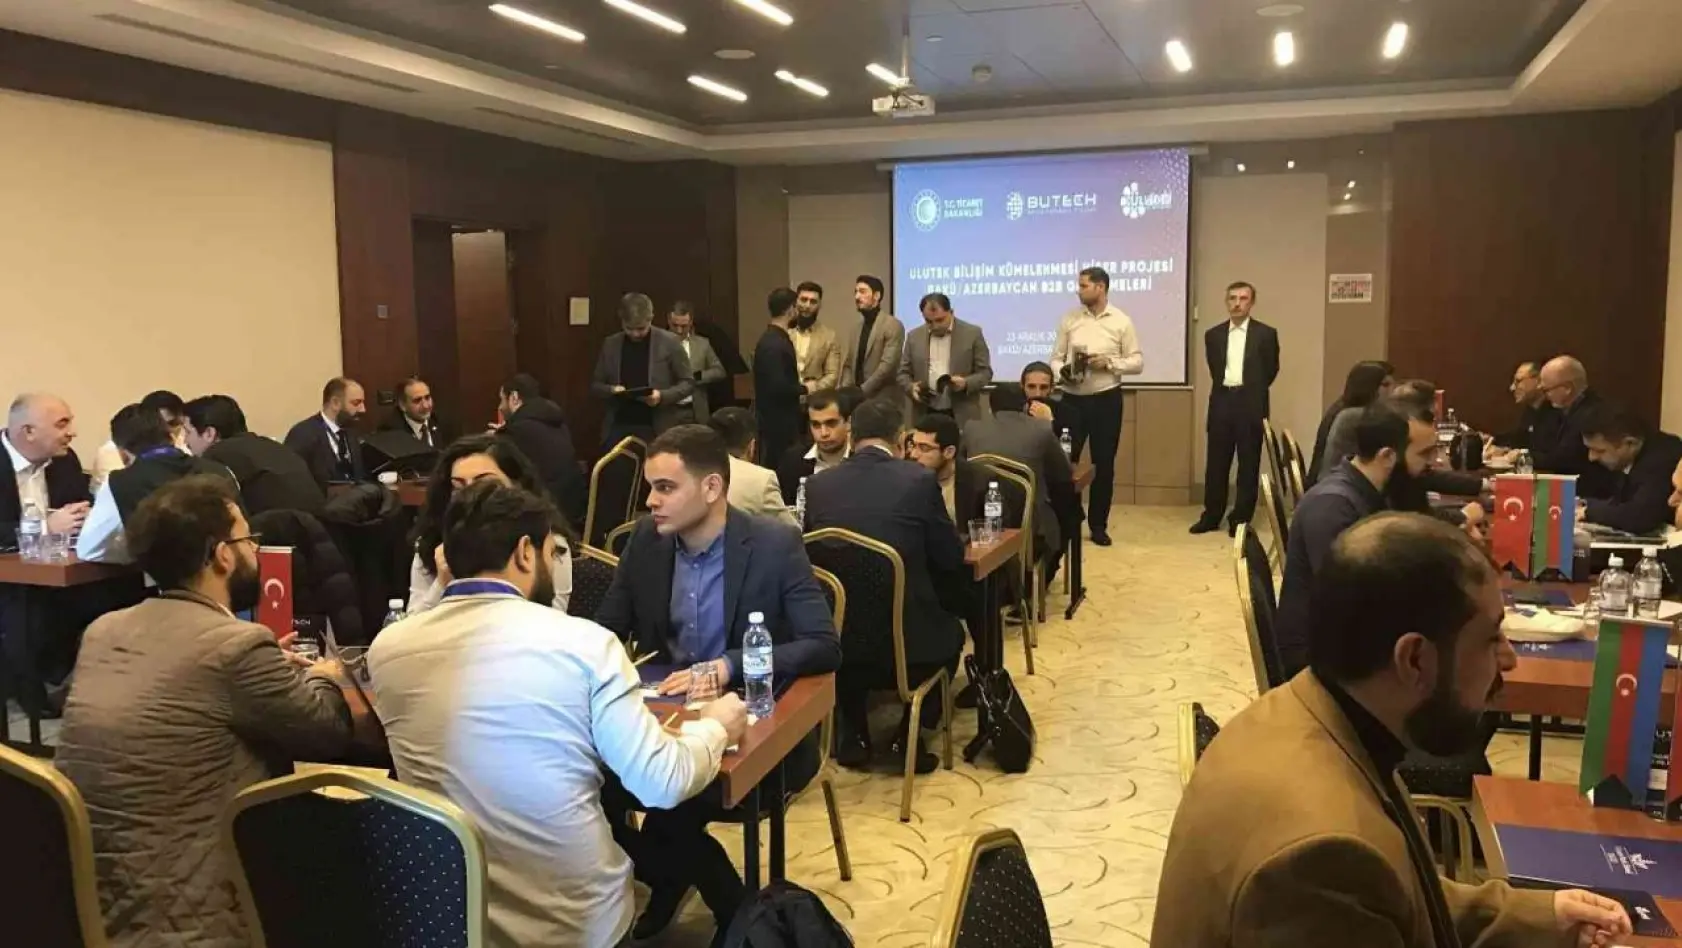 Ulutek bilişim kümesi Butech'ten Azerbaycan çıkarması